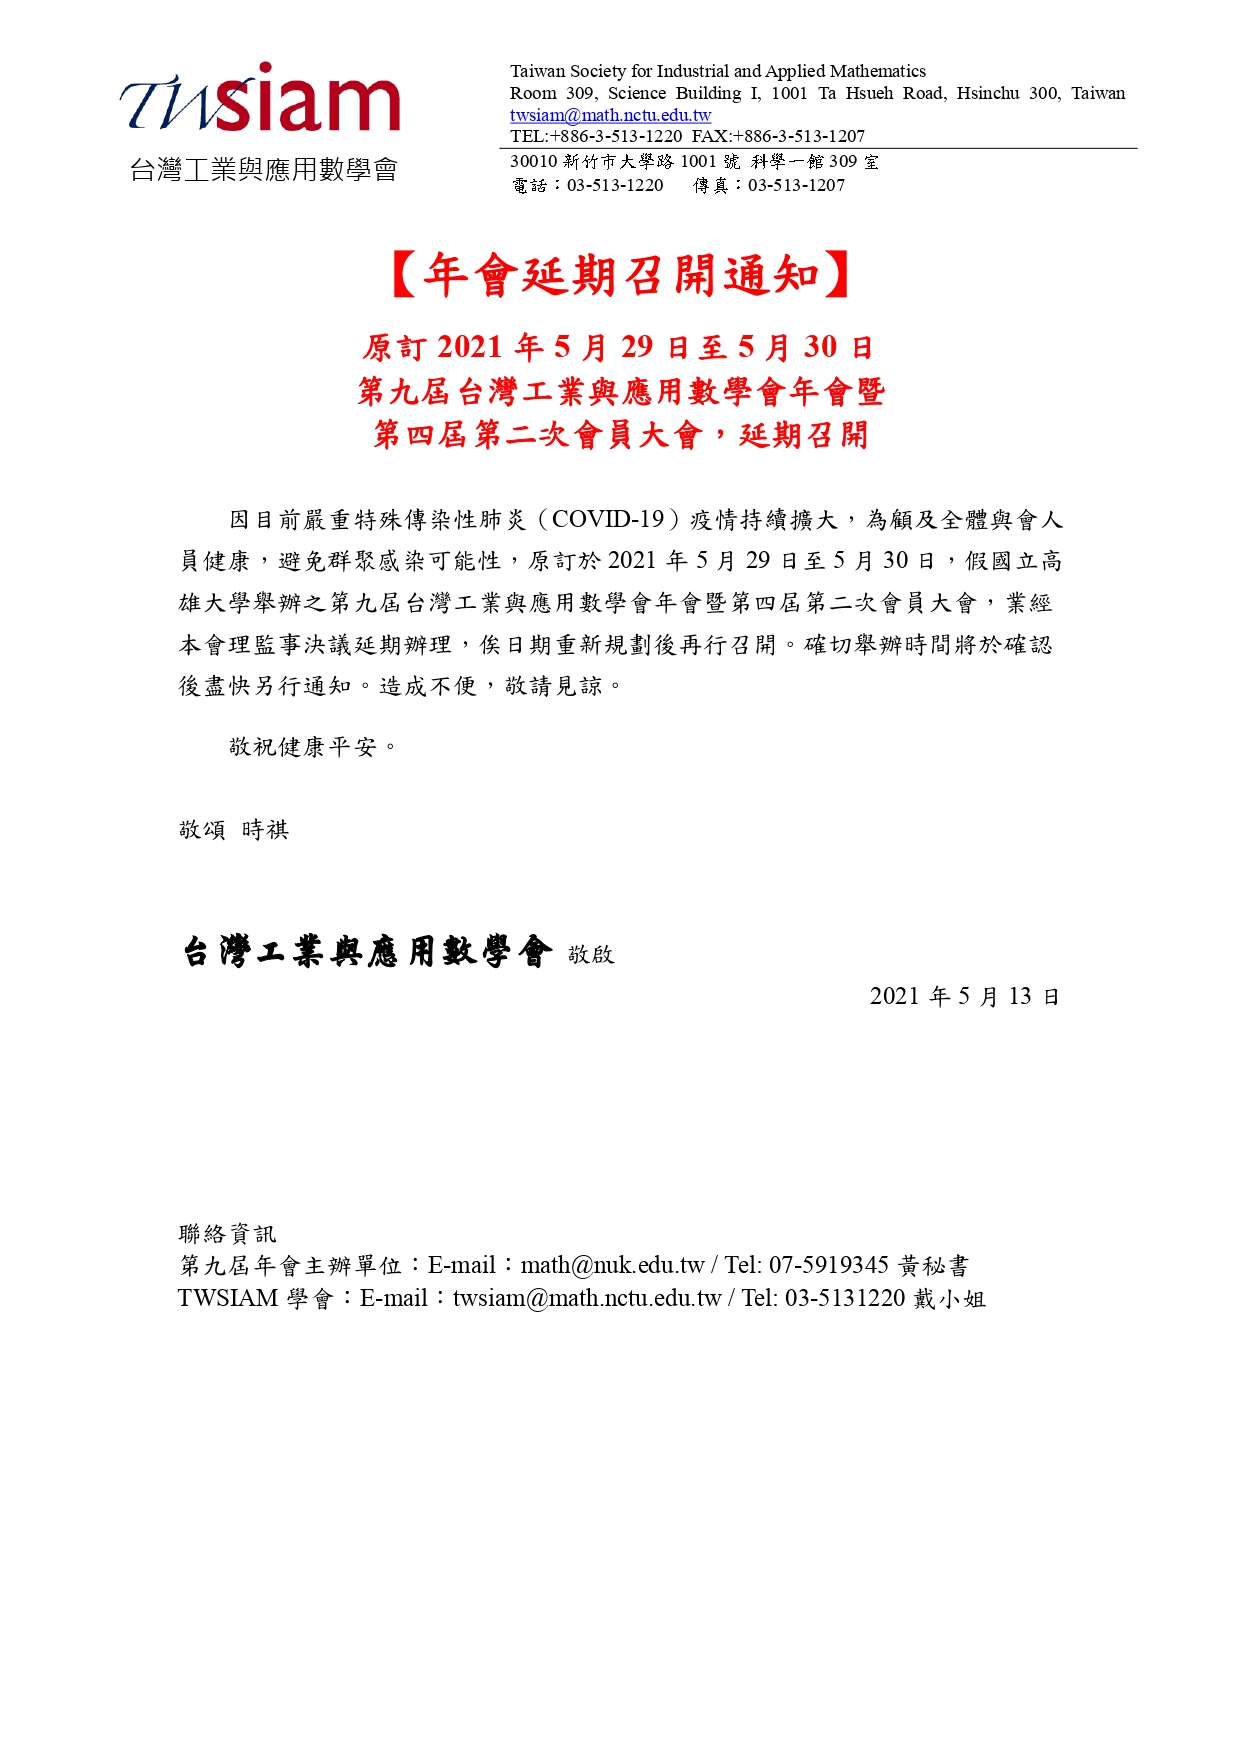 年會延期召開通知原訂2021.05.29 05.30第九屆台灣工業與應用數學會年會延期召開